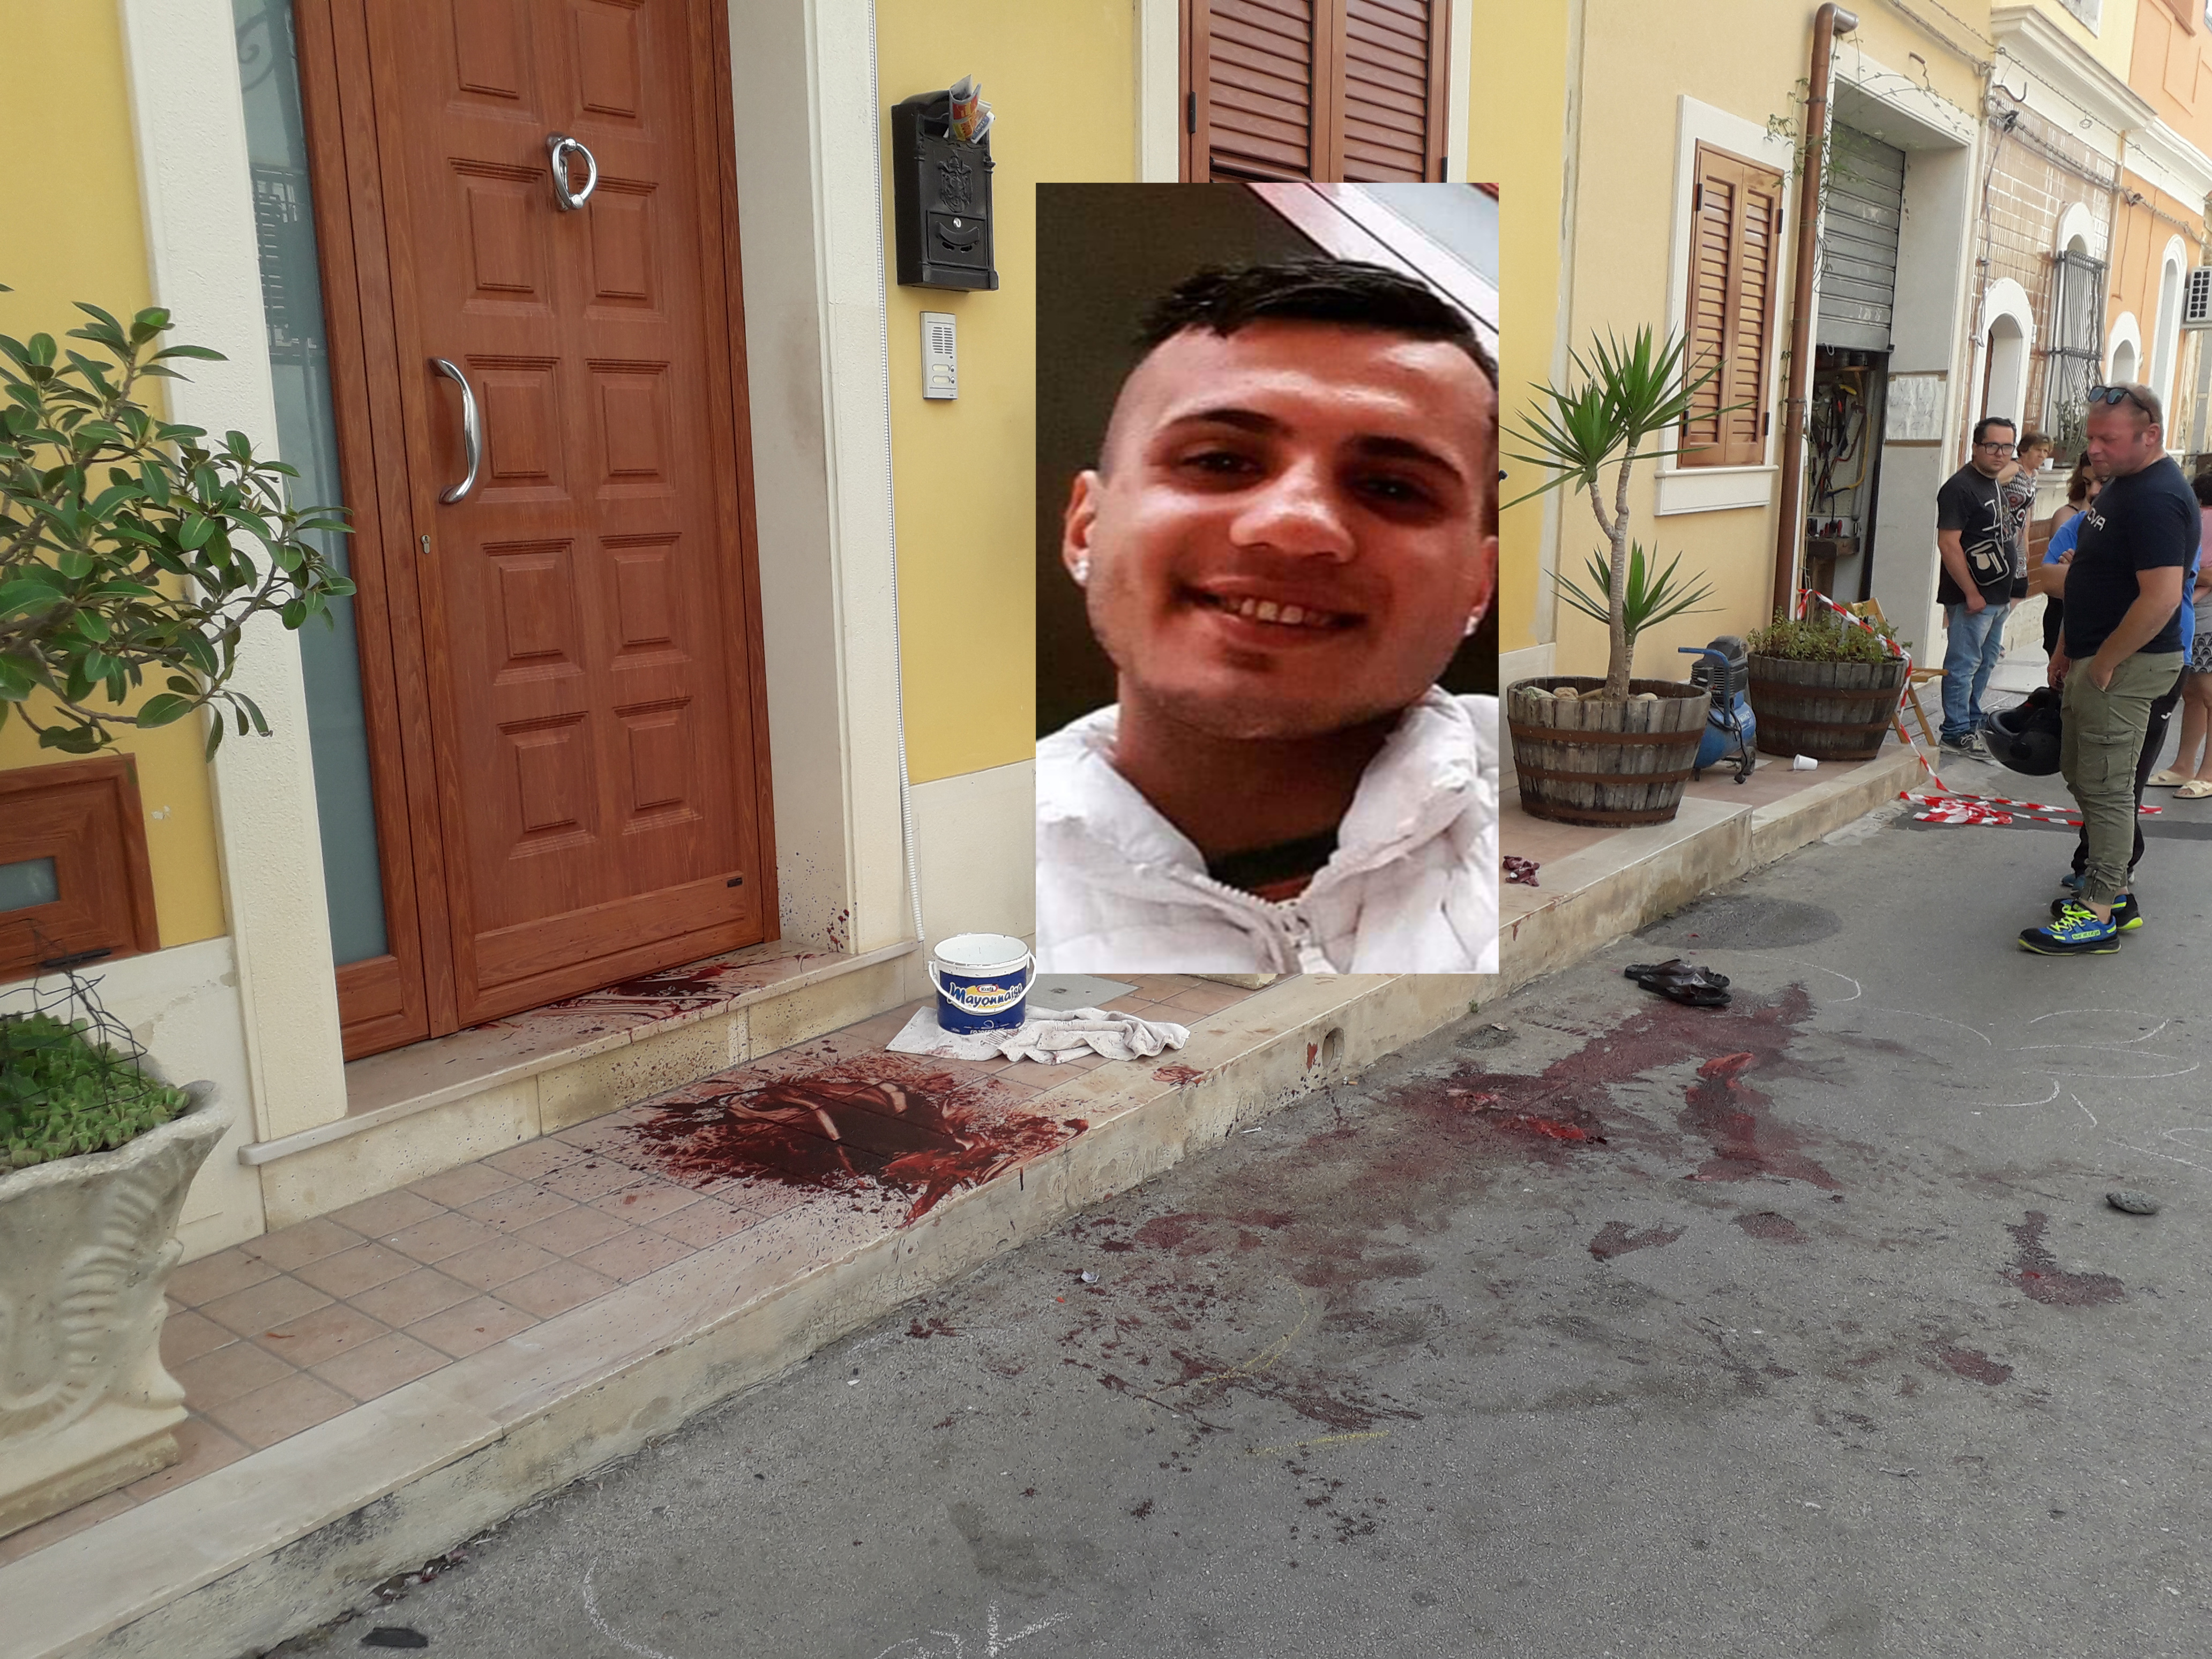 Omicidio ad Avola, gli tendono un agguato sotto casa: ucciso ragazzo di 25 anni